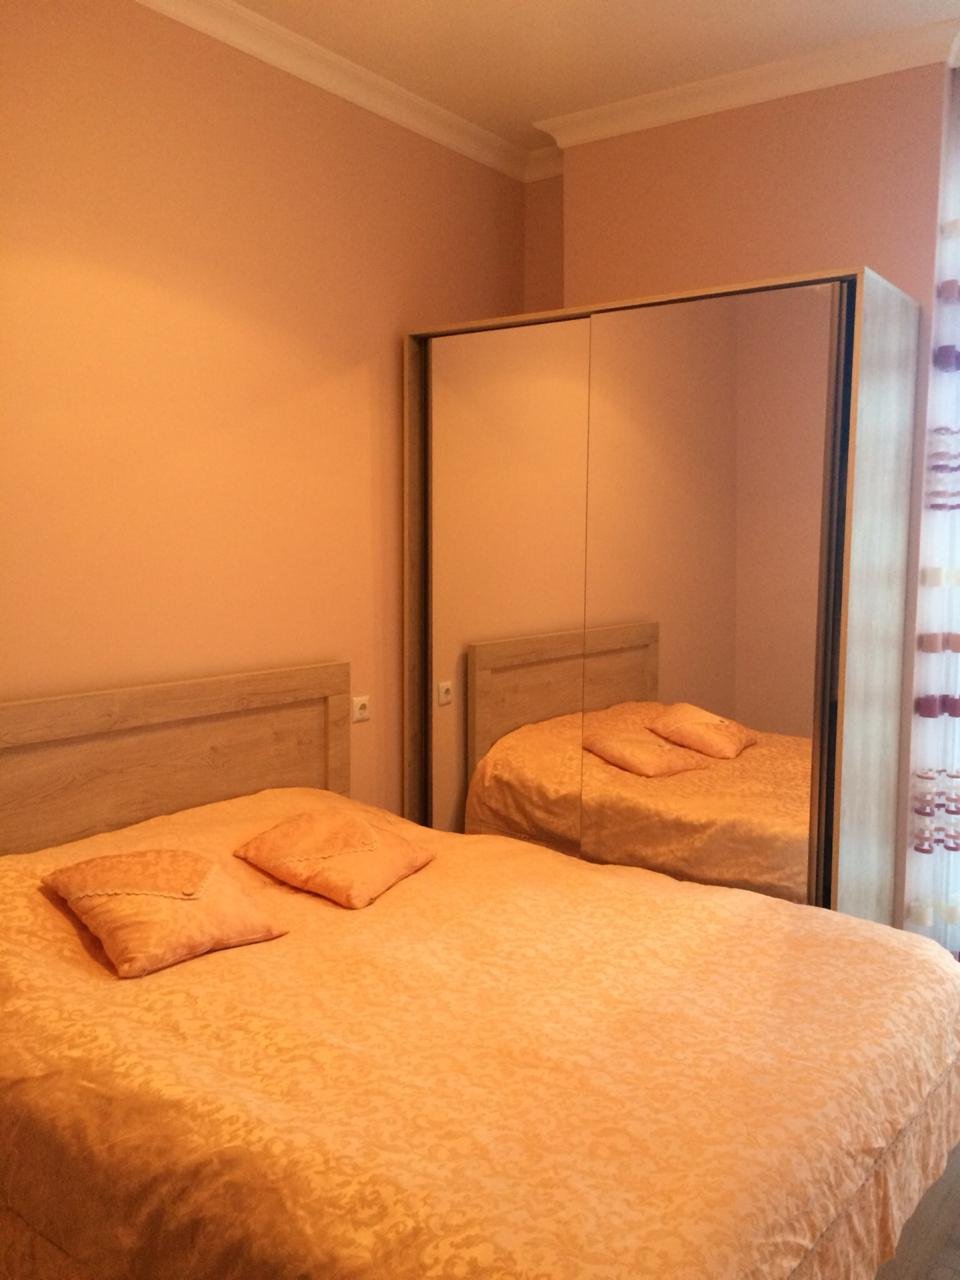 2-комнатная квартира в Центре id-951 - аренда апартаментов в Батуми